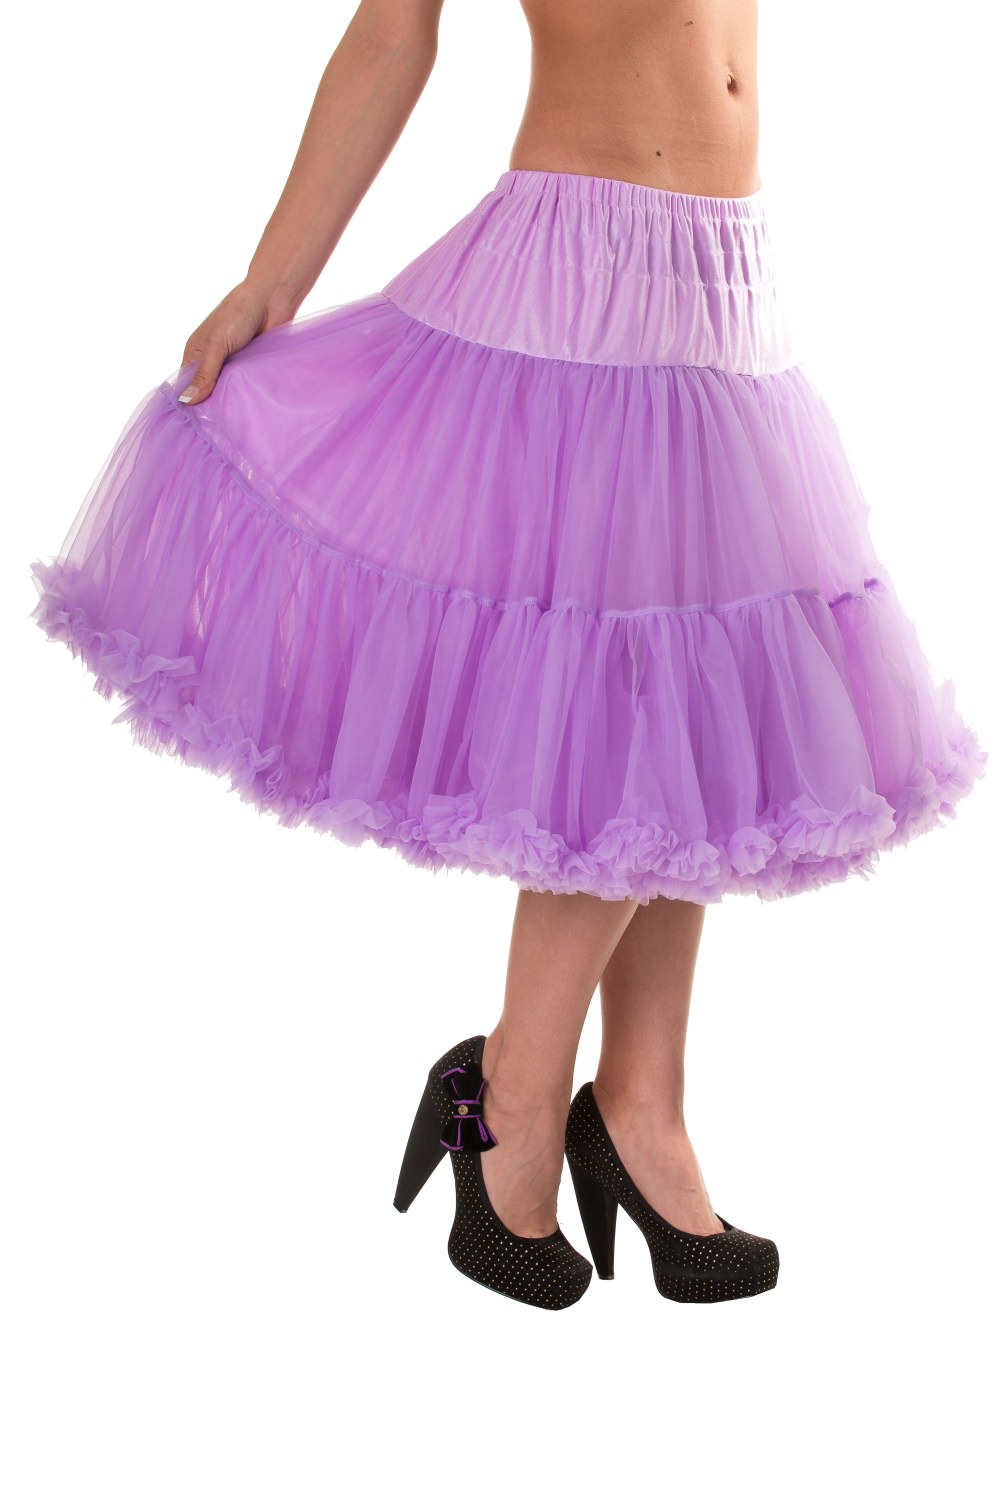 Banned Retro 50s Starlite Lavender Petticoat